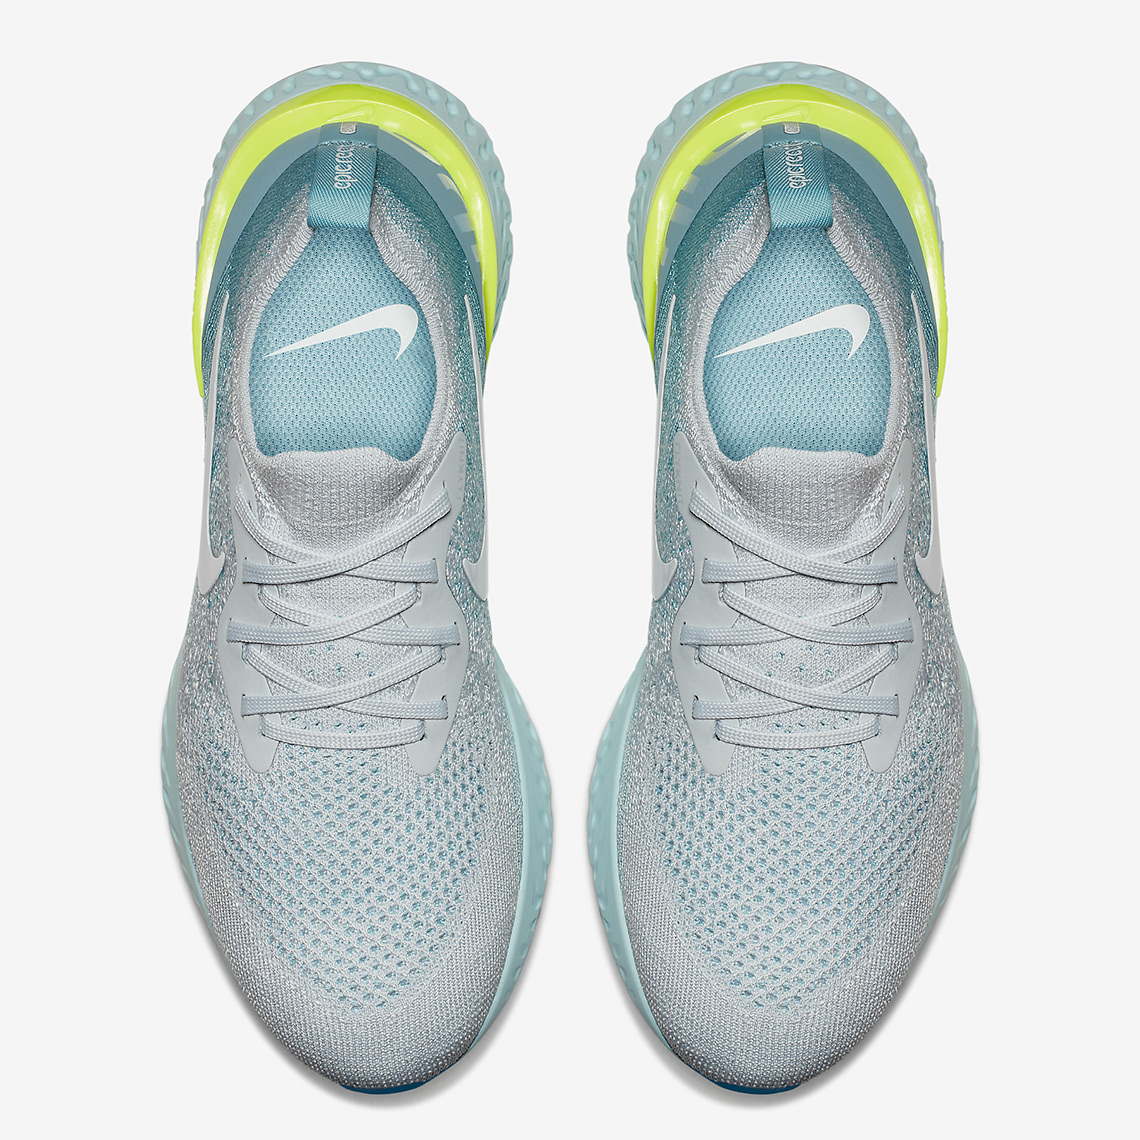 Nike Epic React Flyknit Volt Glow Release Info 3